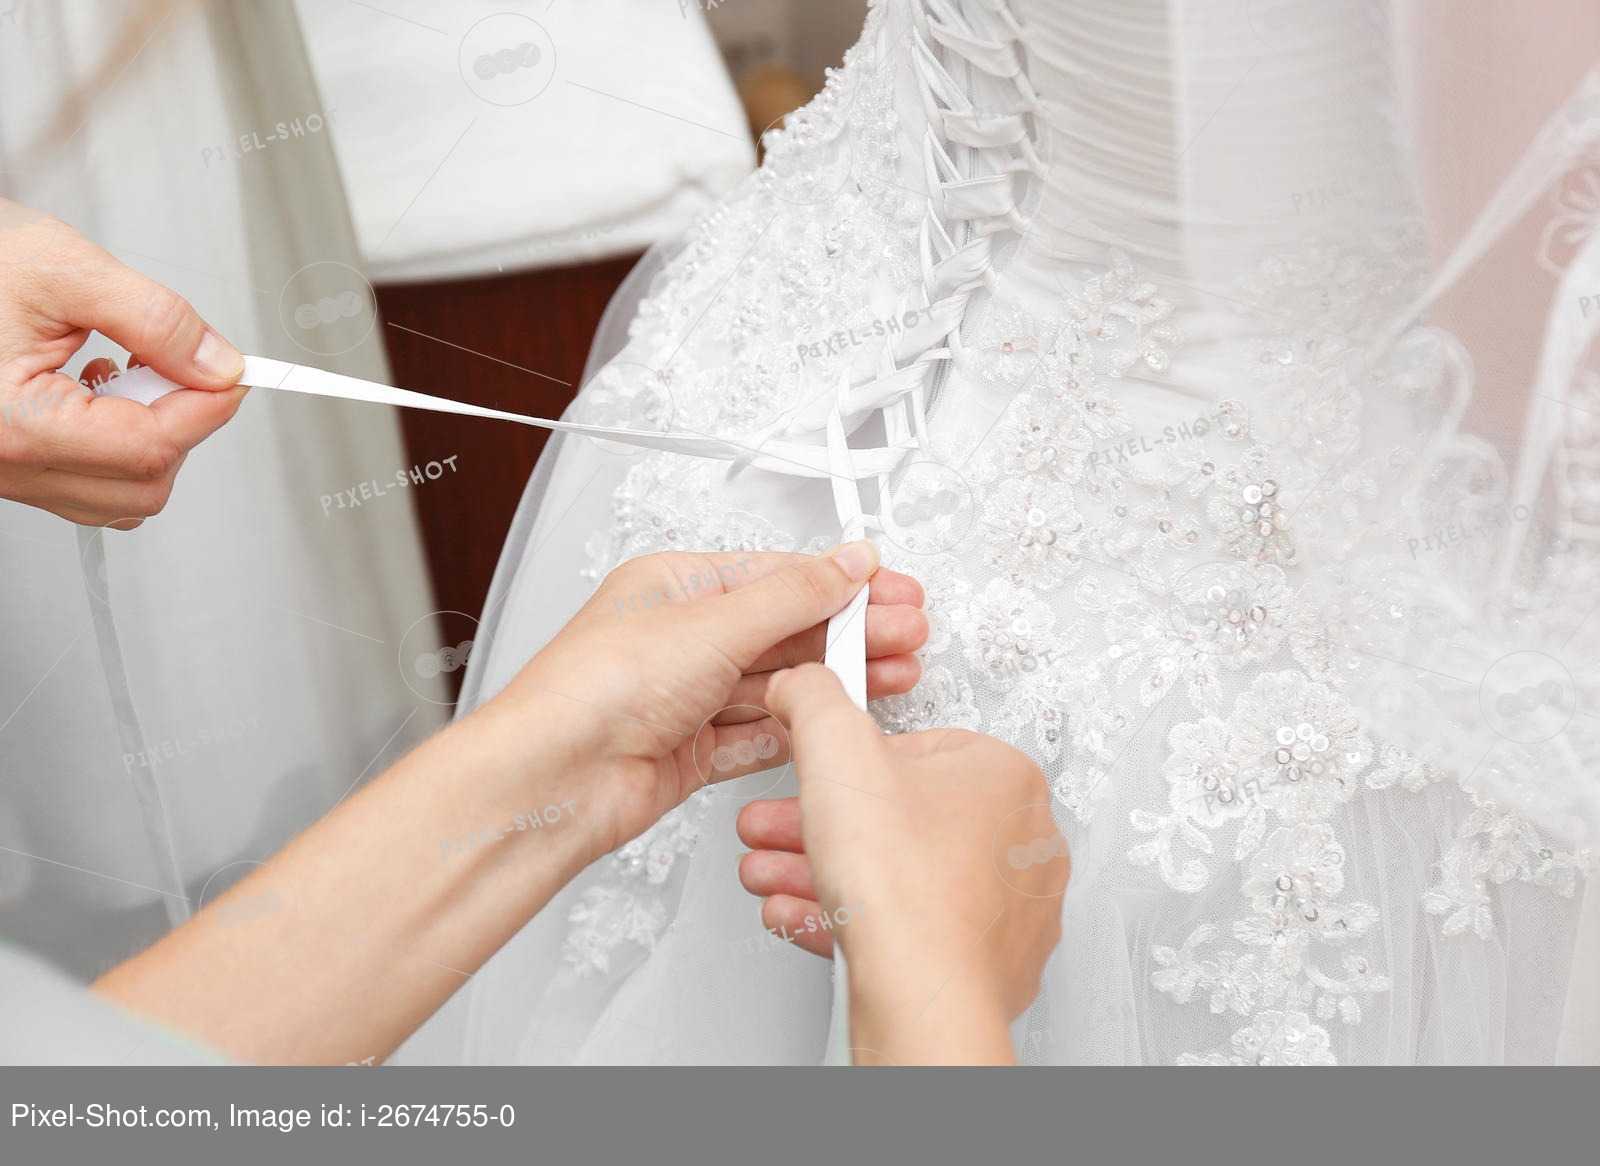 Топ-8 идей, как сэкономить на свадебном платье: покупка вечернего наряда, декор своими руками и др.